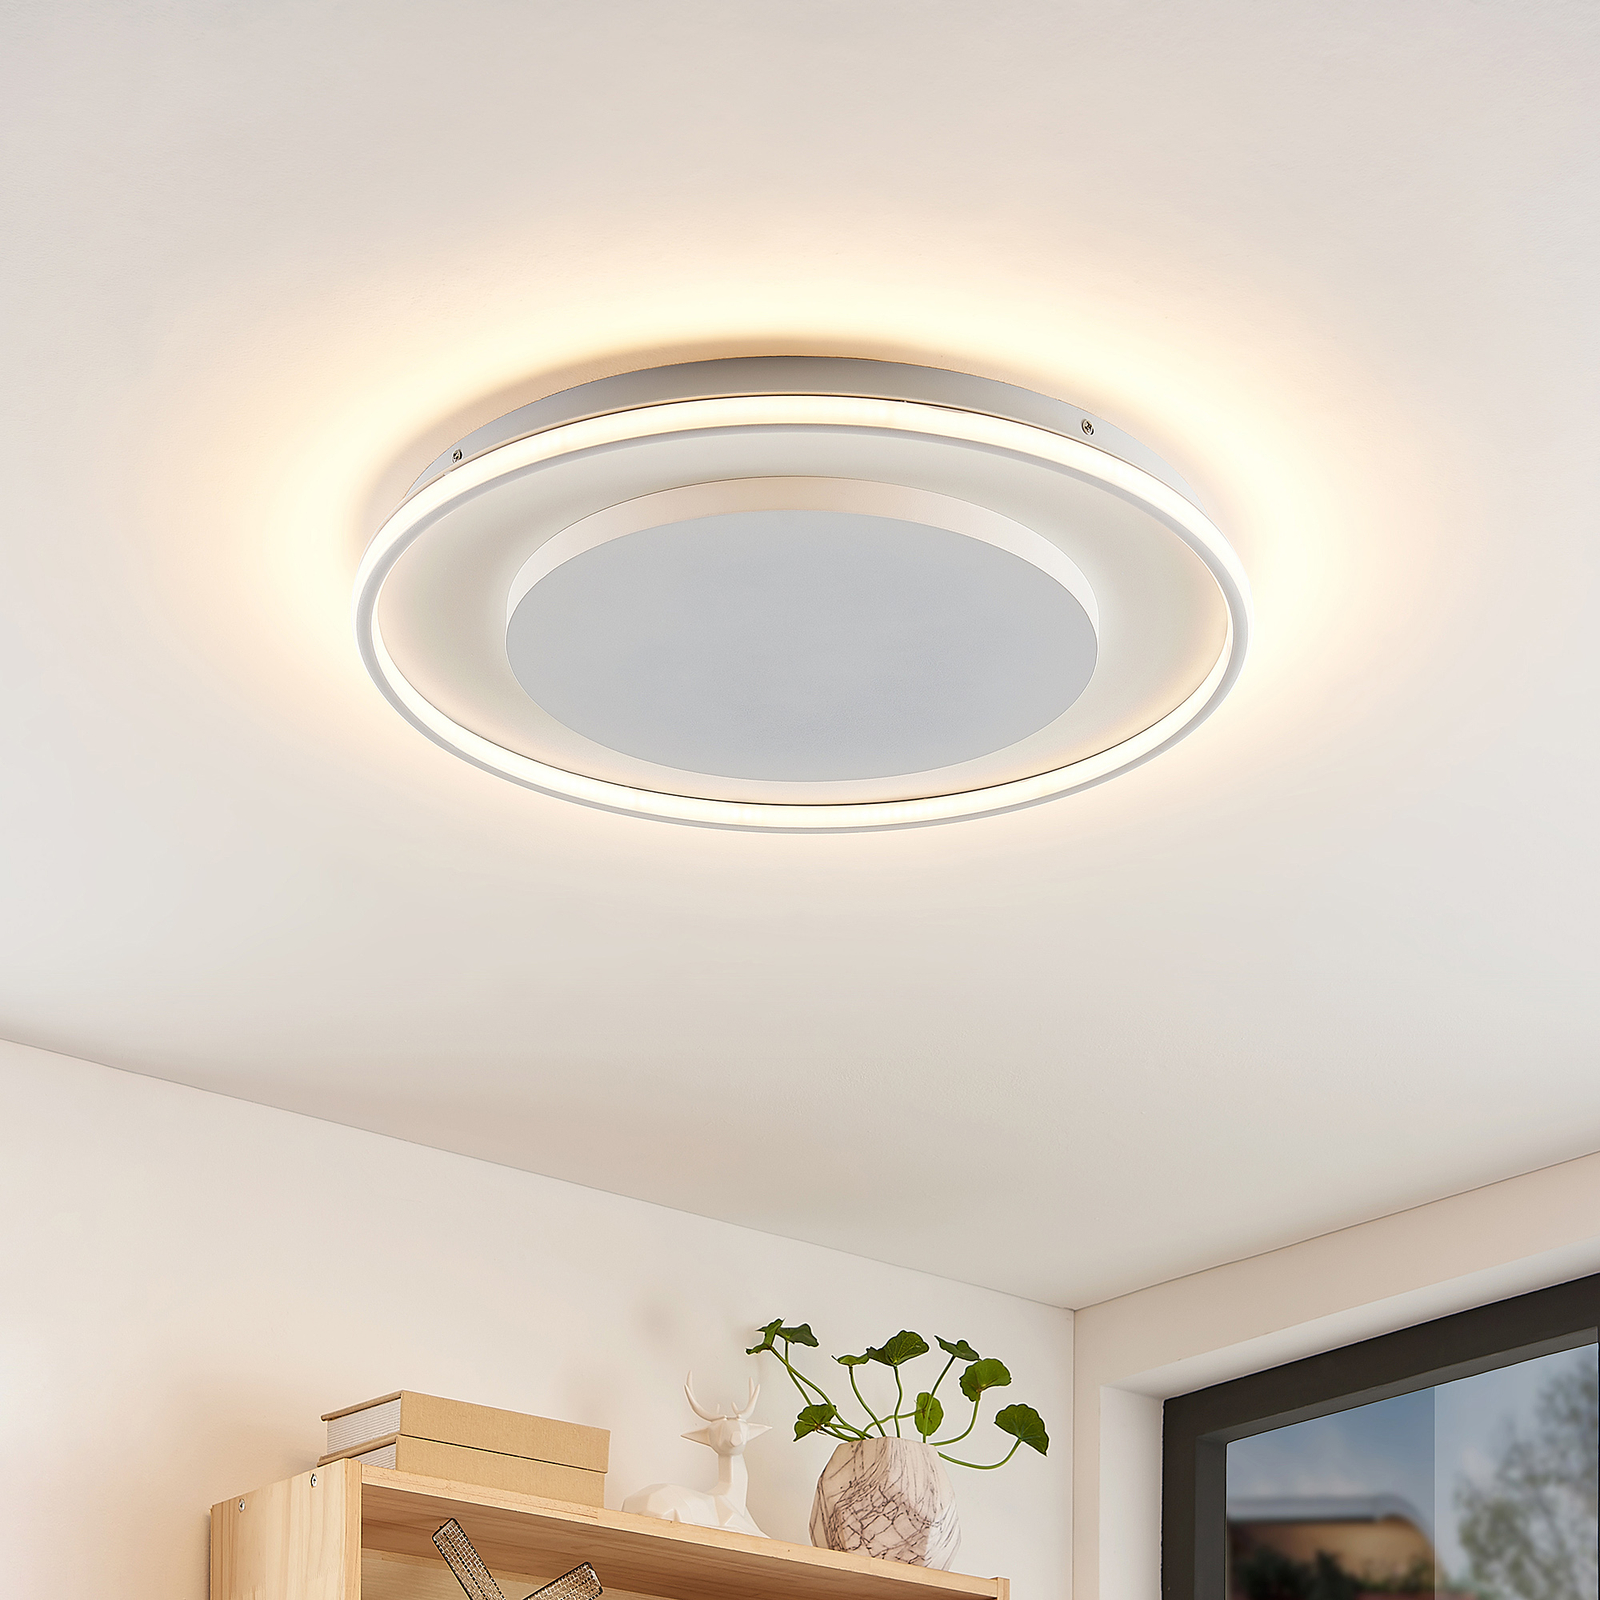 Lucande Murna LED stropní světlo, Ø 61 cm